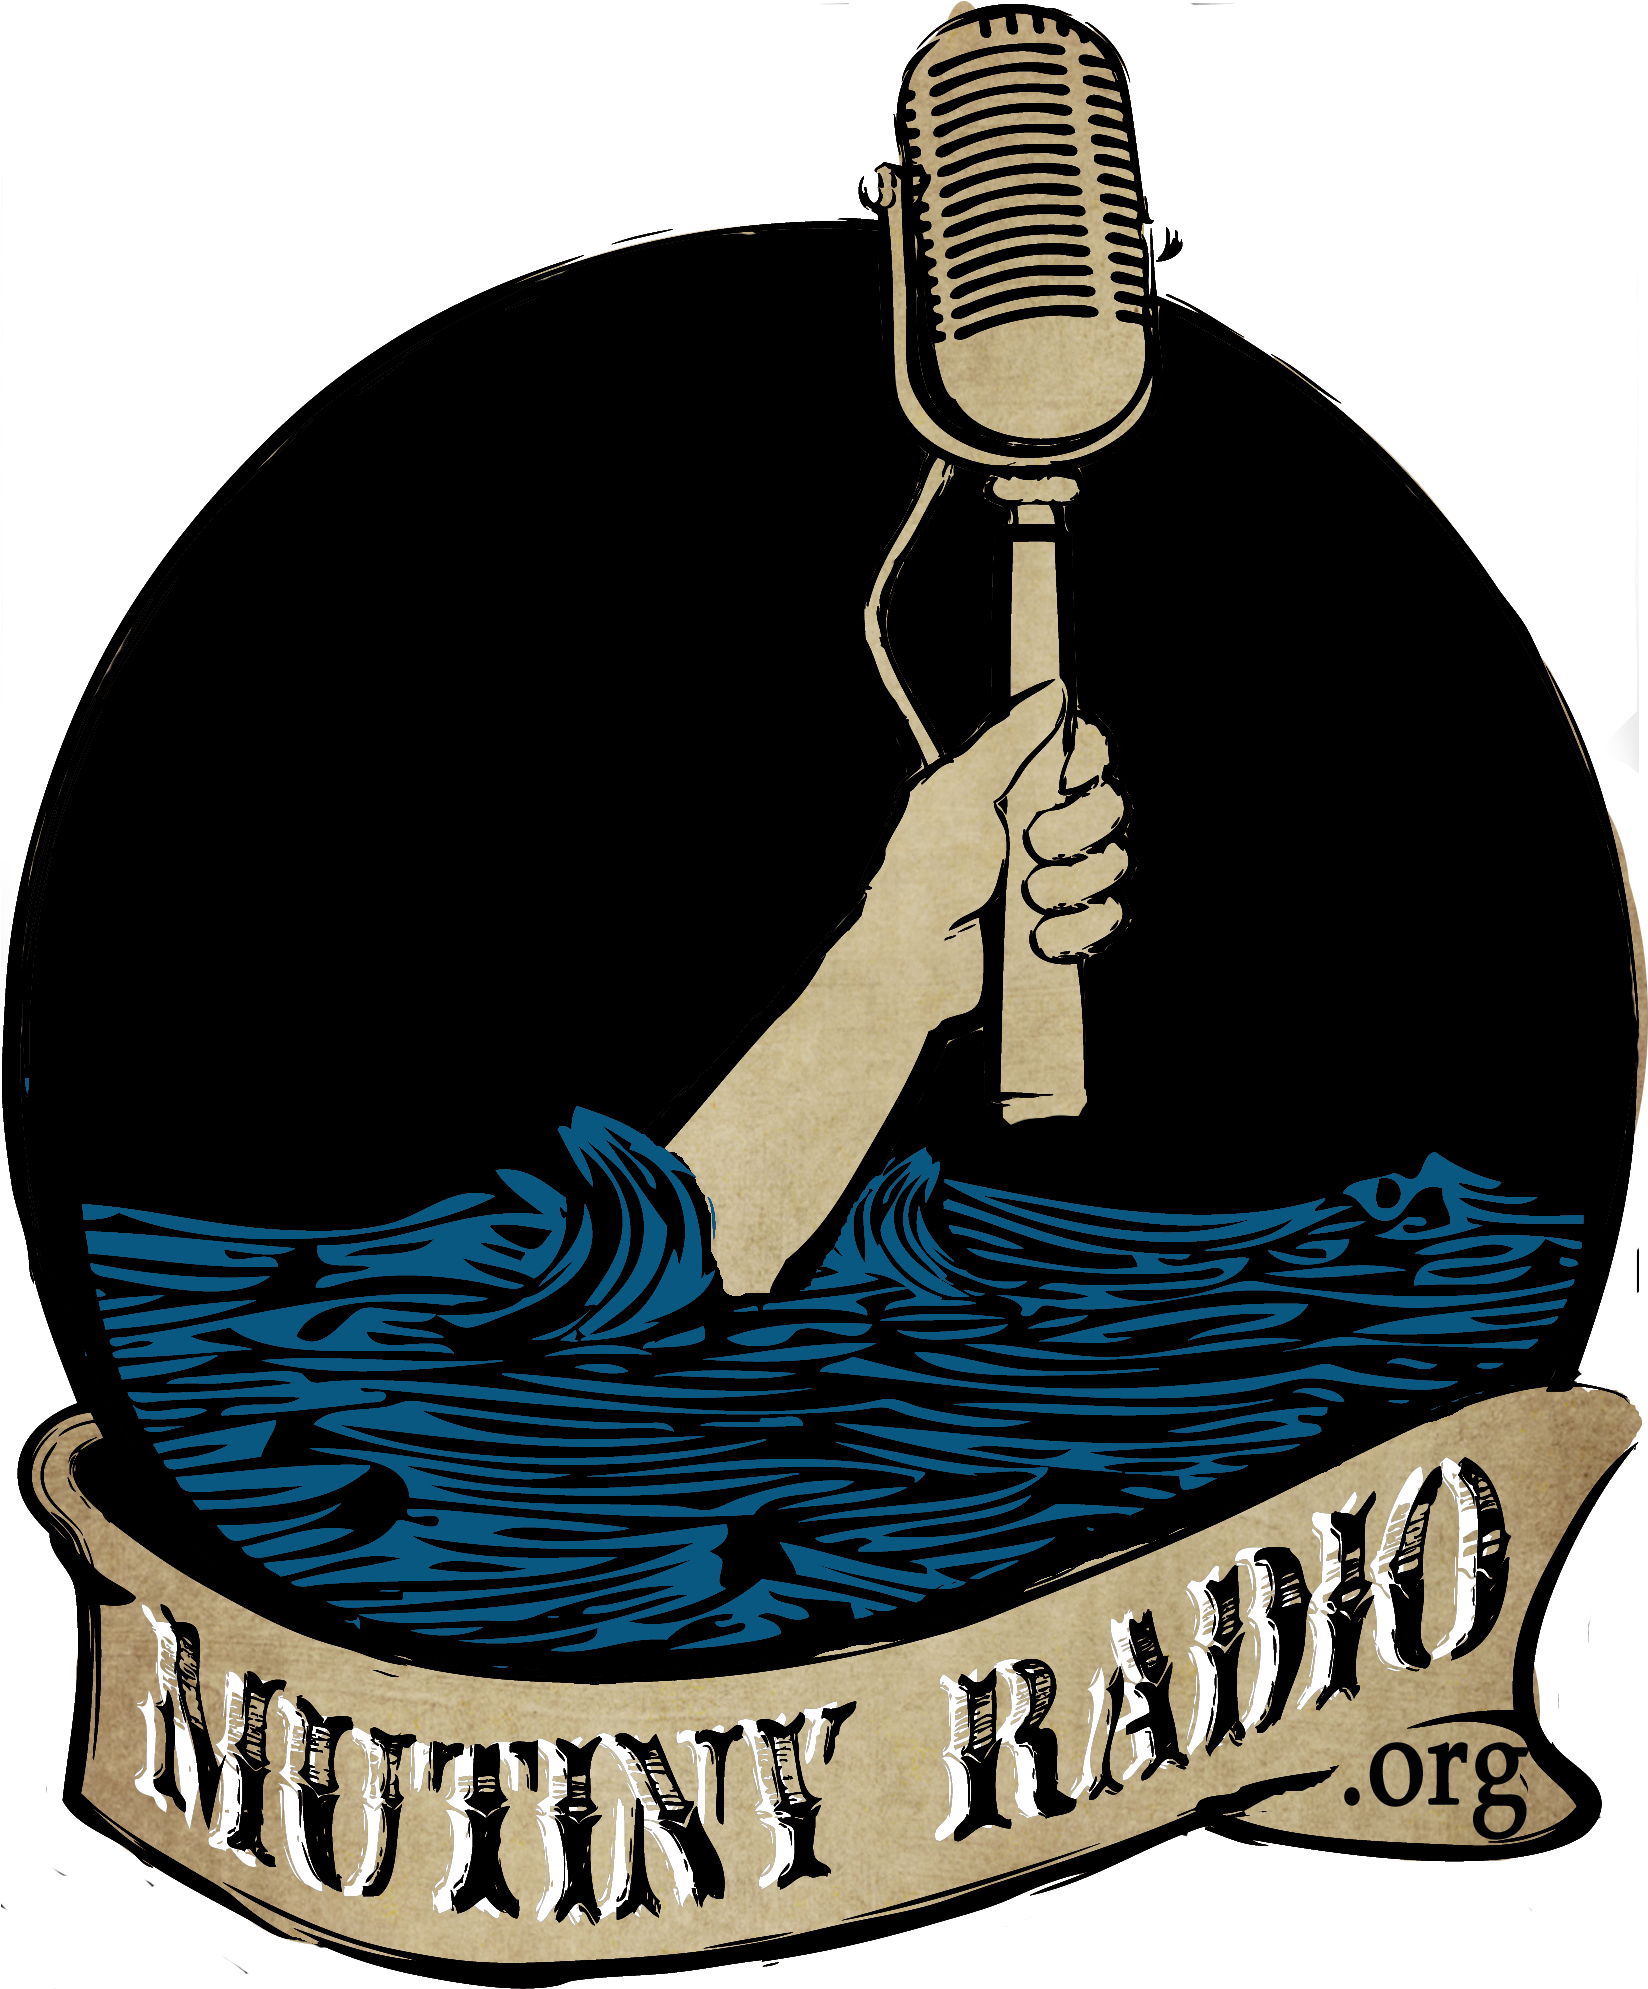 06 Jul 2011 - Mutiny Radio (1722x2042)